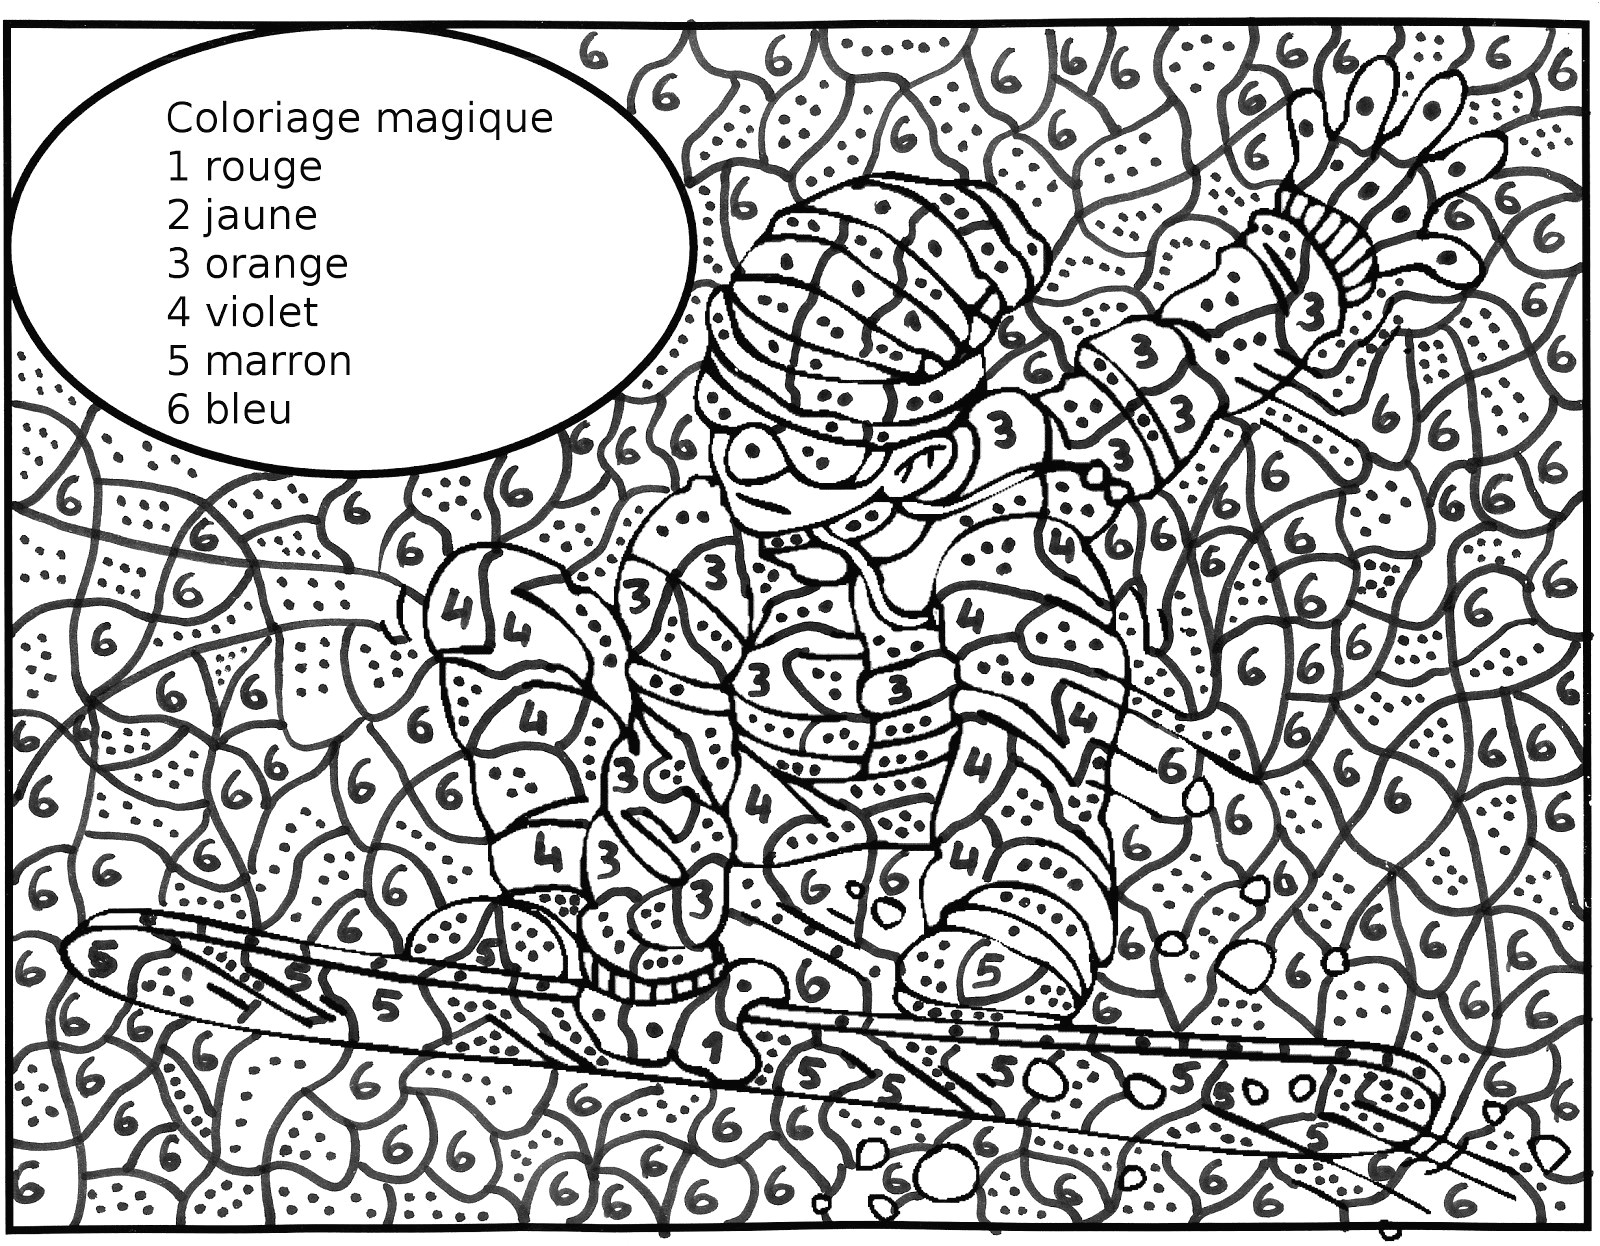 Coloriage Magique Maternelle Grande Section Best 25